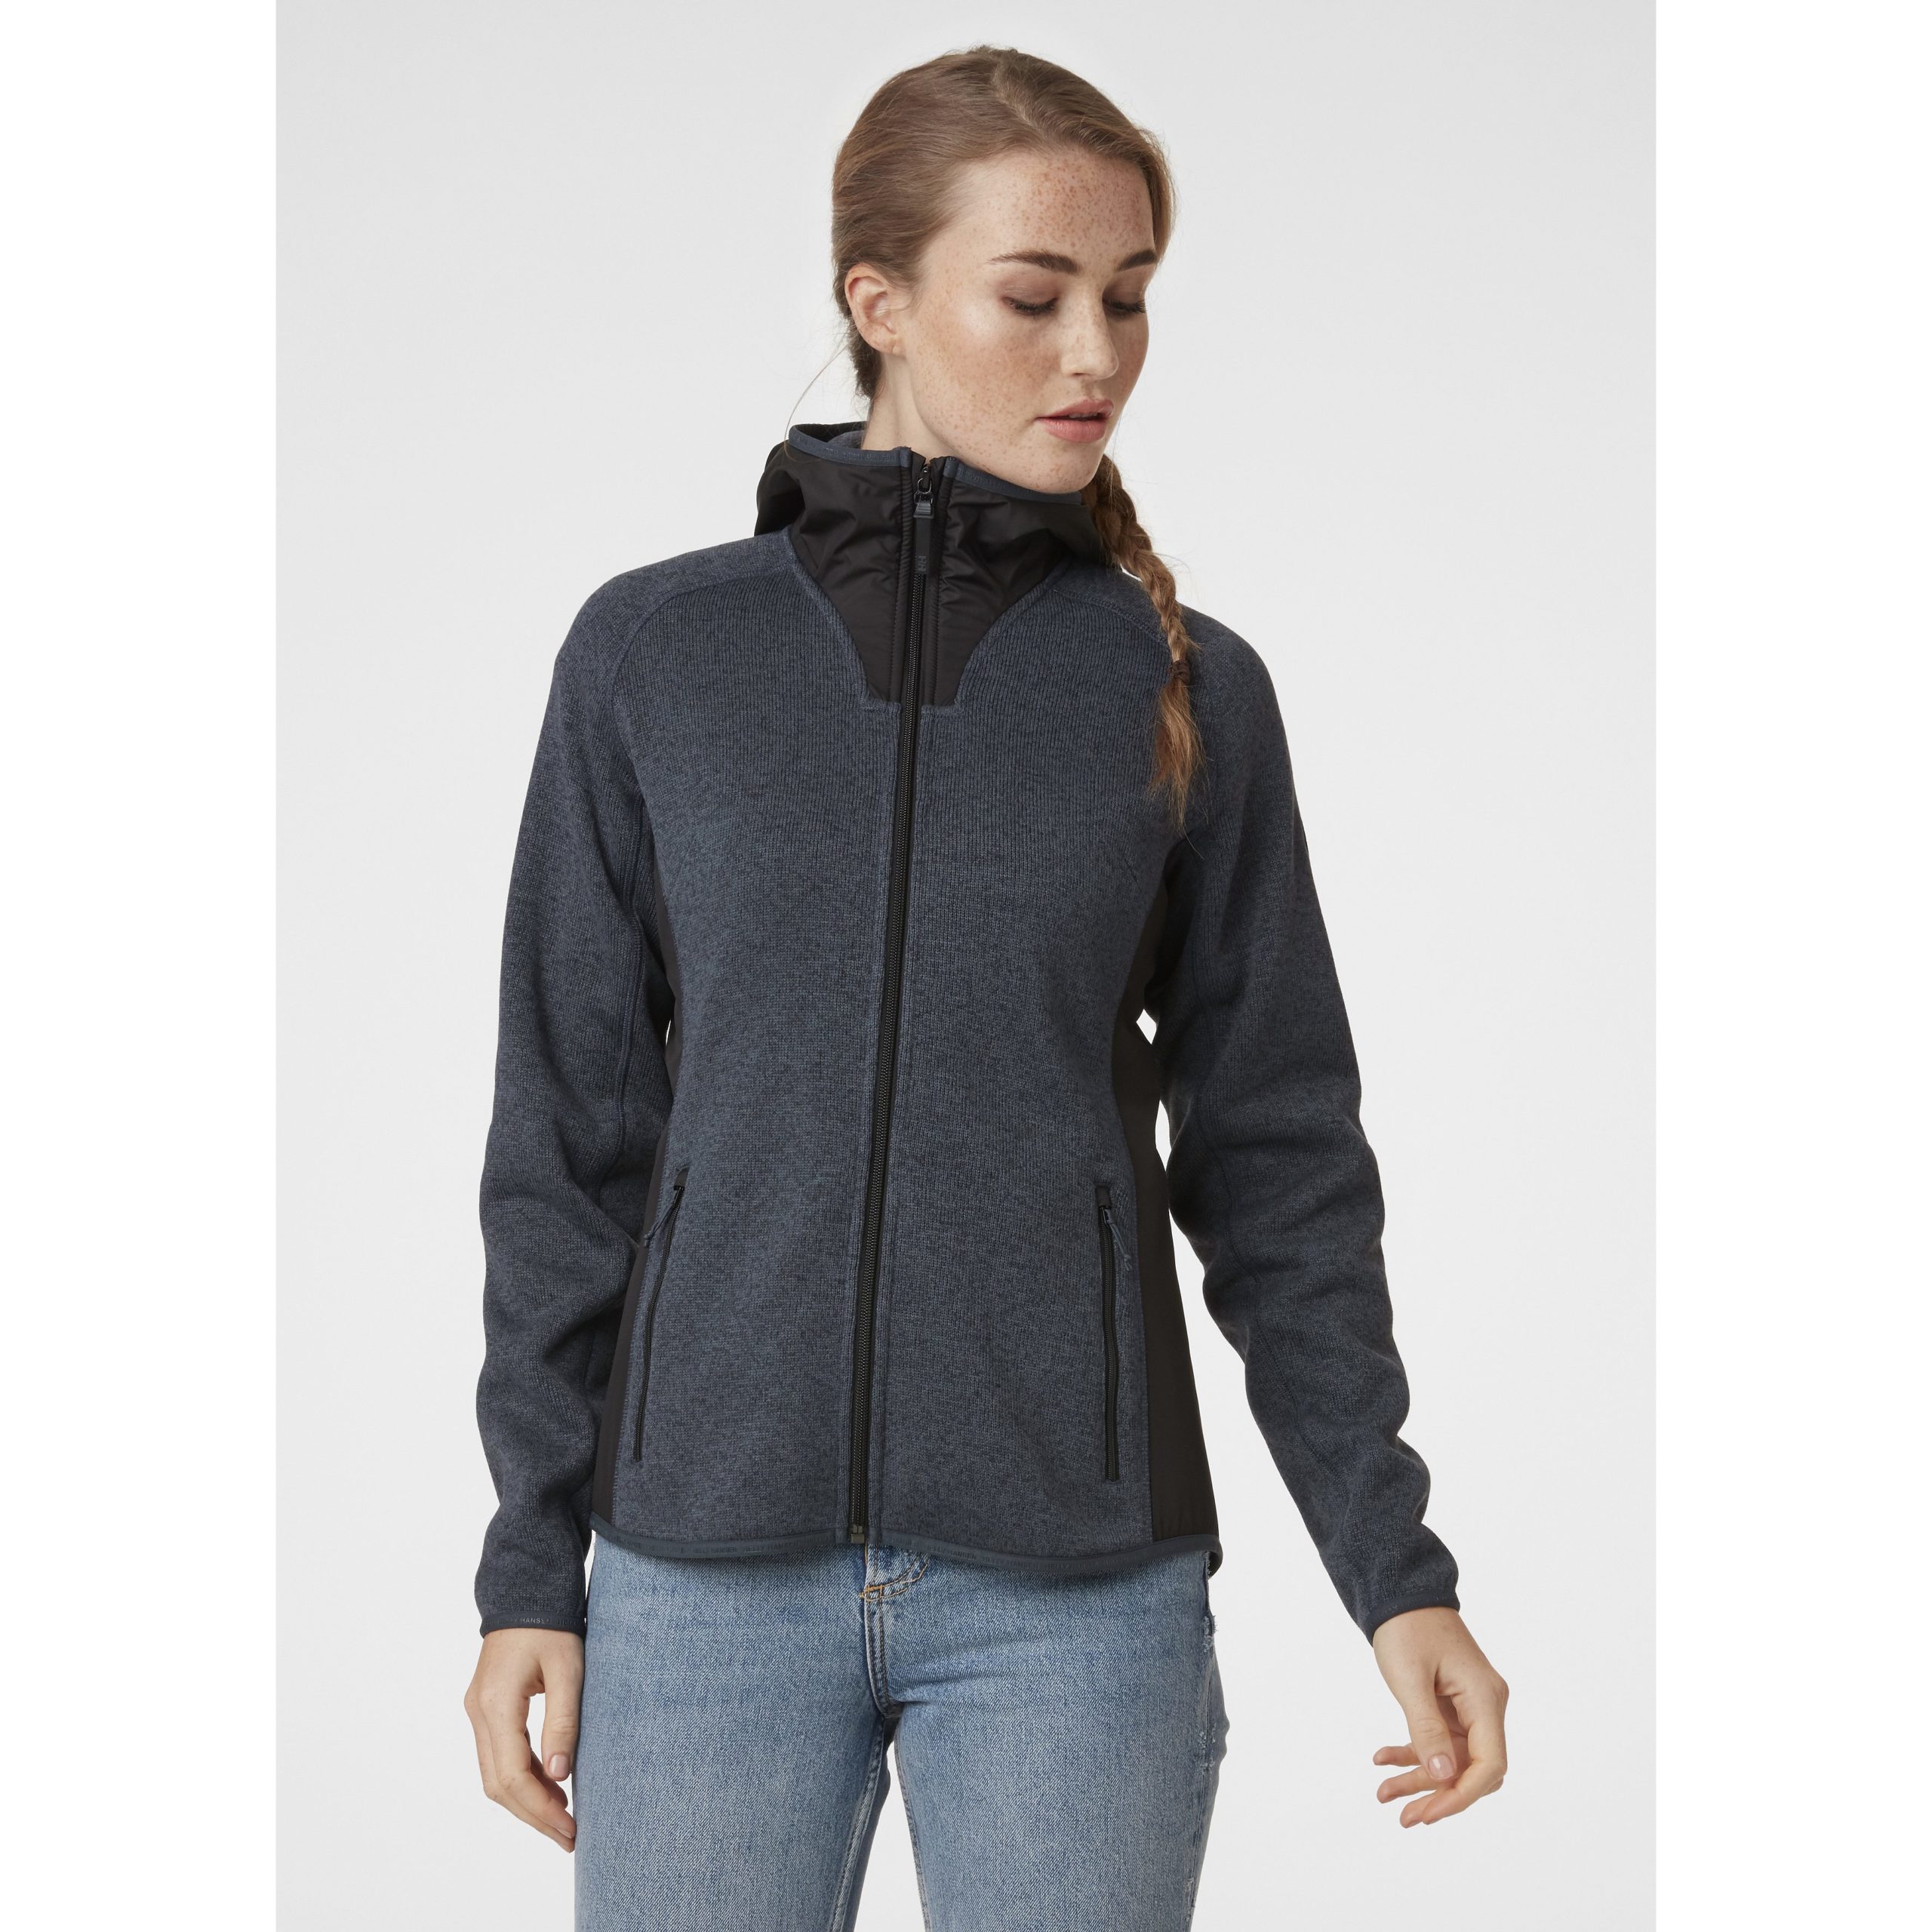 Helly Hansen Womens W Varde Hooded Fleece Jacket | Big Weather Gear ...